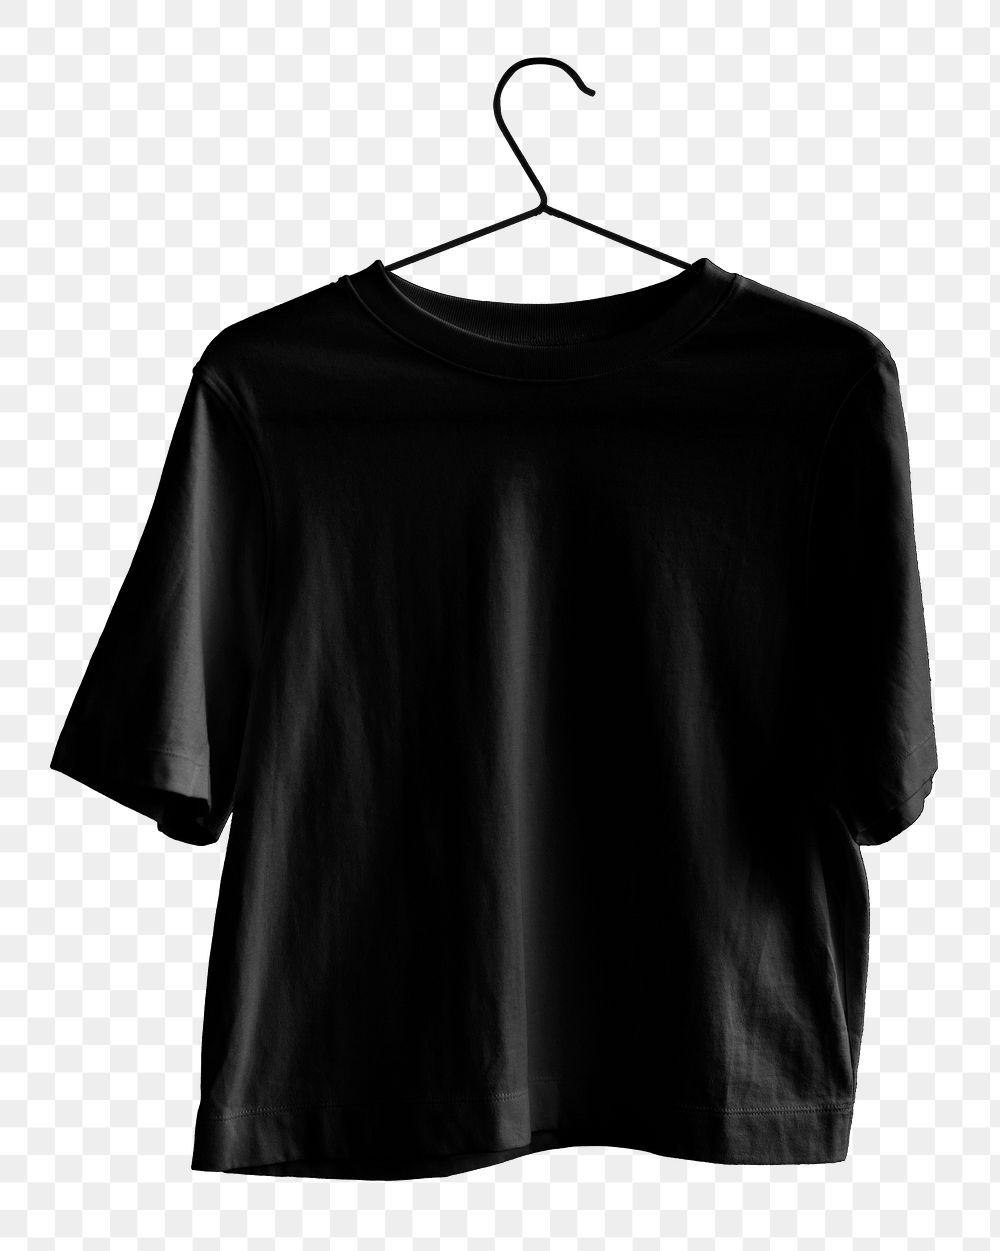 PNG Black t-shirt on hanger transparent background